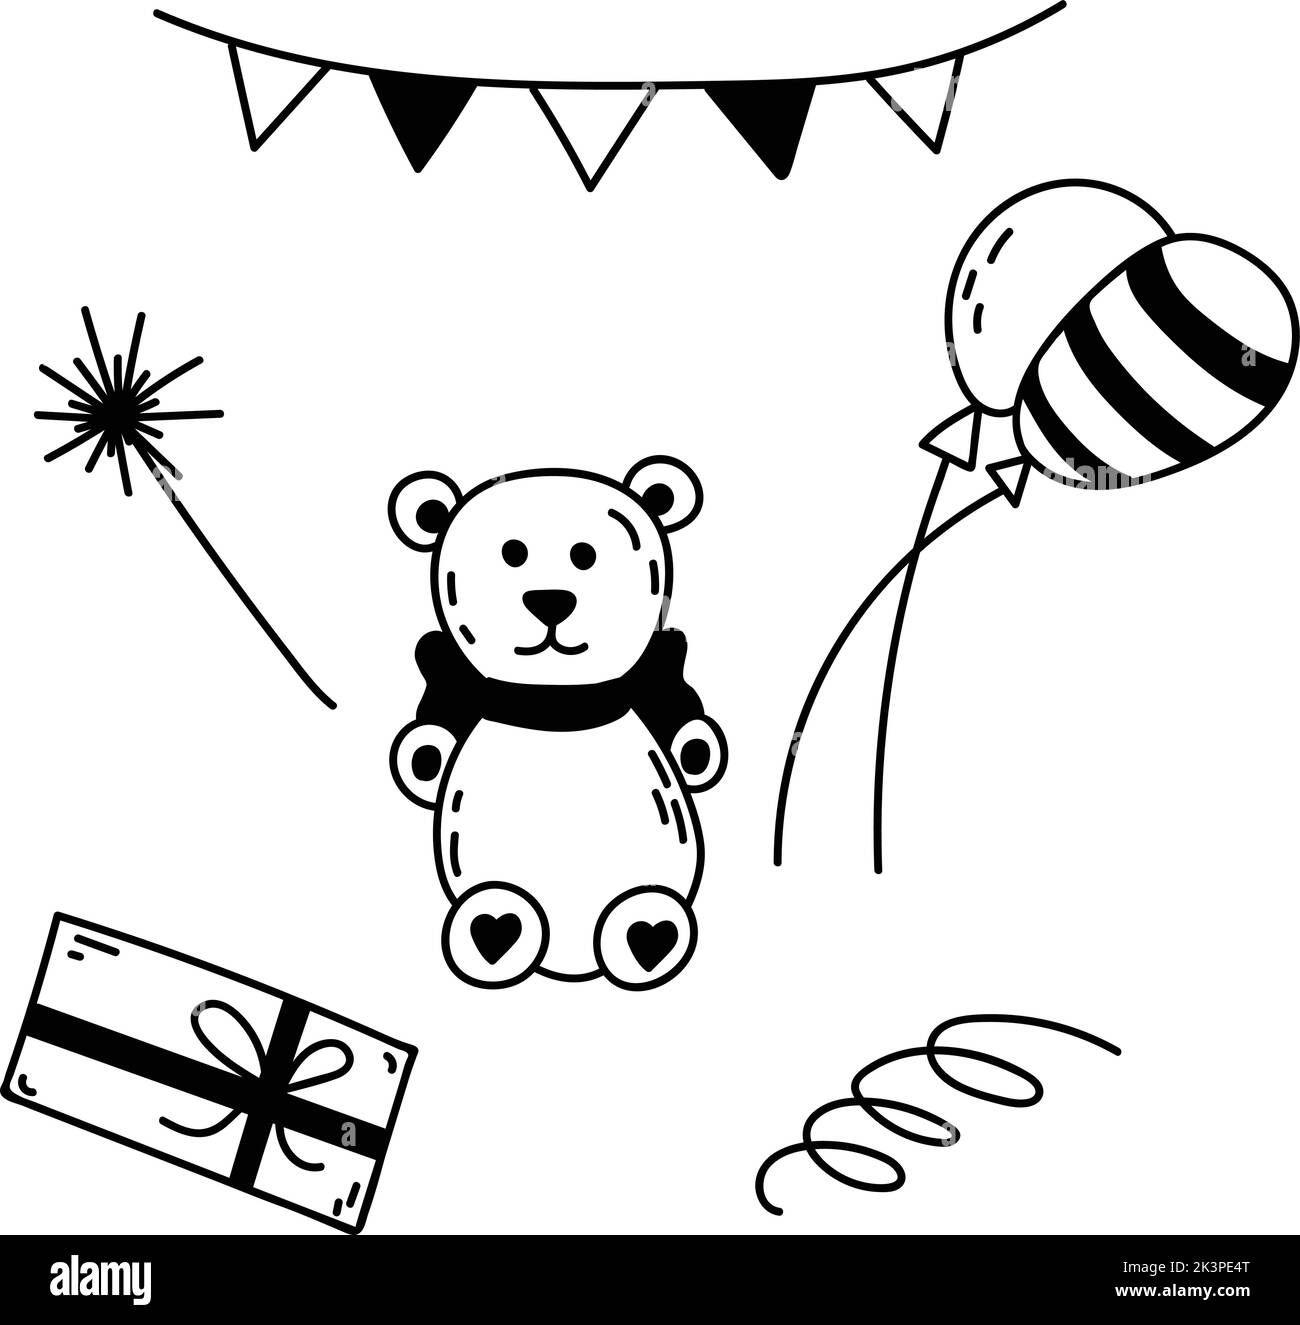 Doodle Set von Elementen für Geburtstagsfeier. Handgezeichnete Vektorgrafik mit Teddybär, Ballons, Party-Fahnen, Girlande, Geschenk, Wunderkerzen für Kinder de Stock Vektor